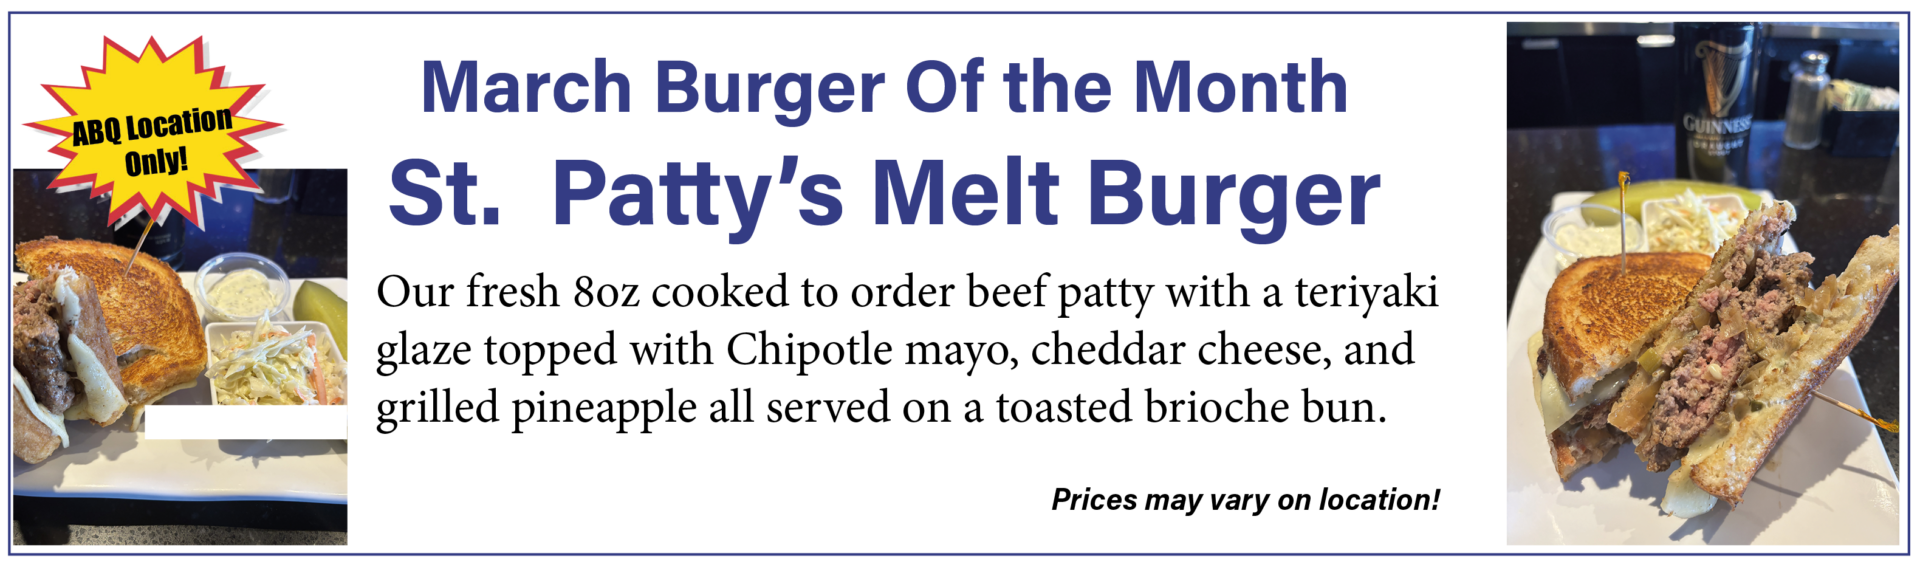 Burger of the Month Albuquerque